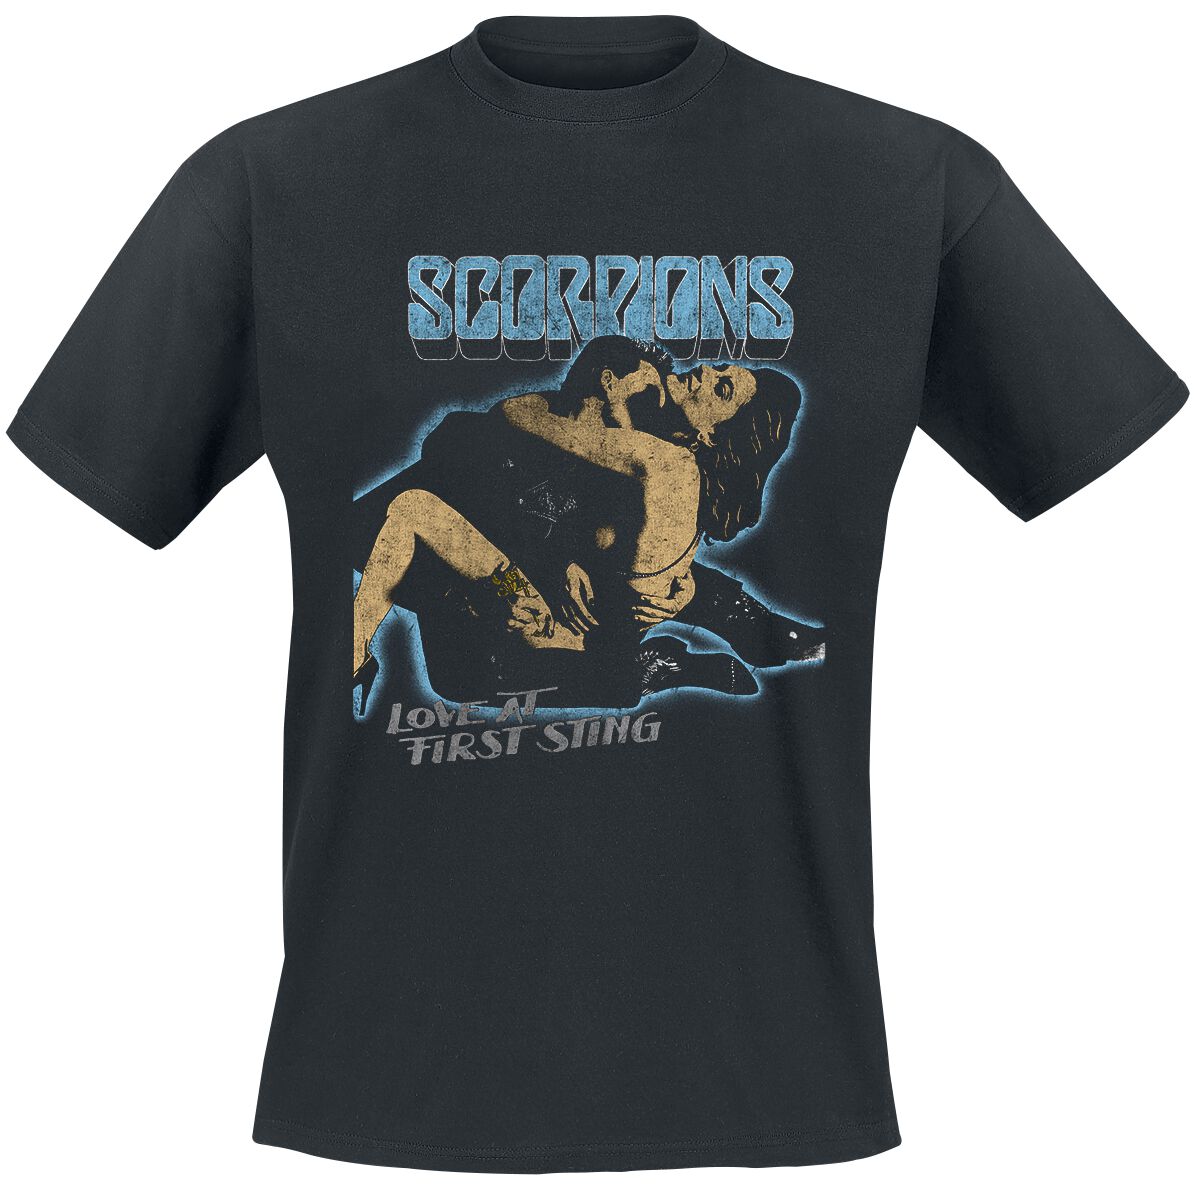 Scorpions T-Shirt - First Sting - XXL bis 3XL - für Männer - Größe 3XL - schwarz  - Lizenziertes Merchandise!